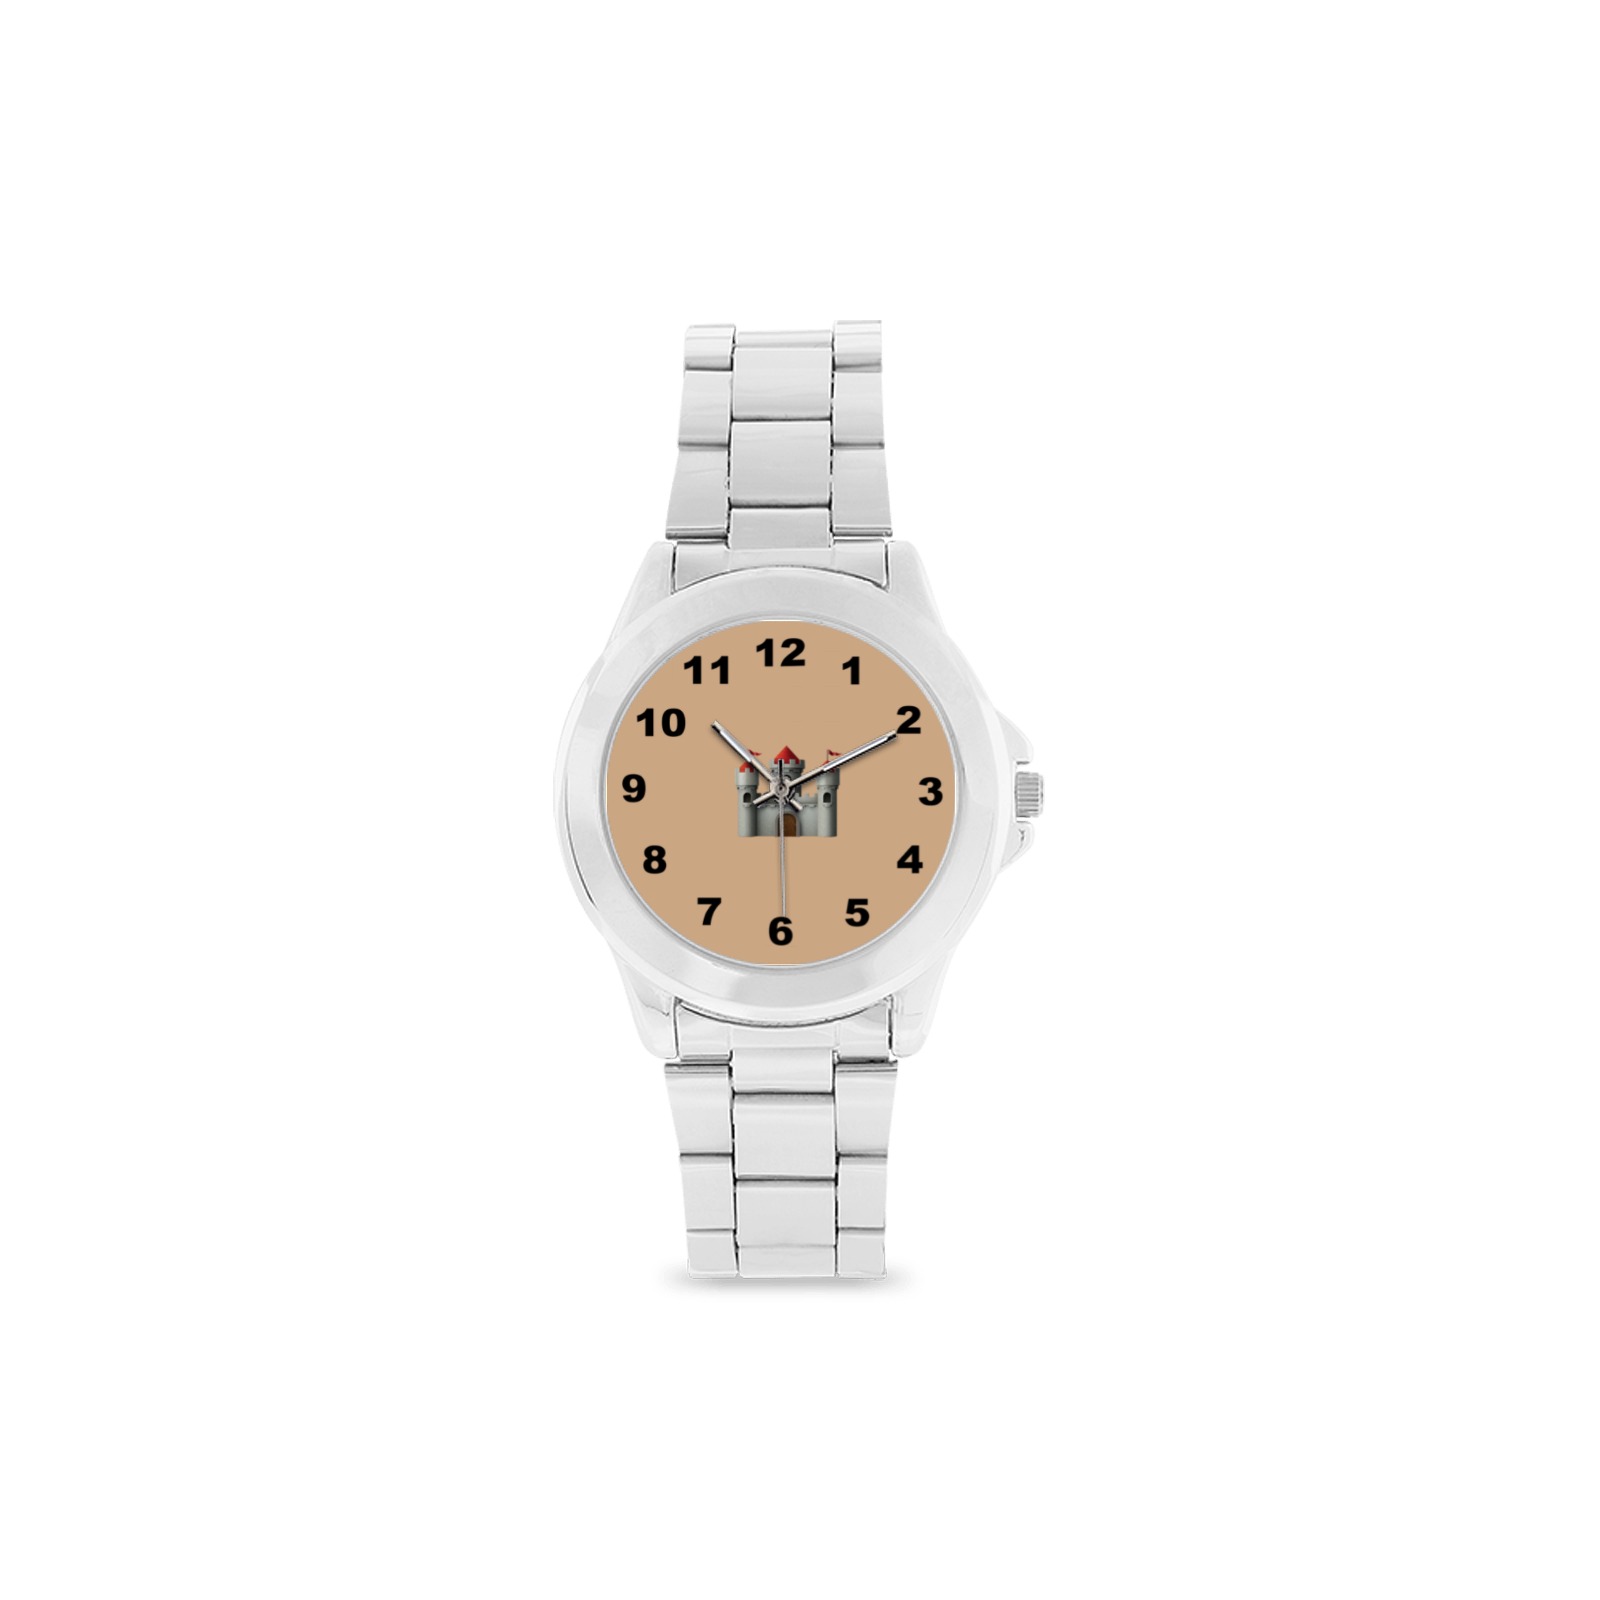 castle100 Unisex Stainless Steel Watch(Model 103)